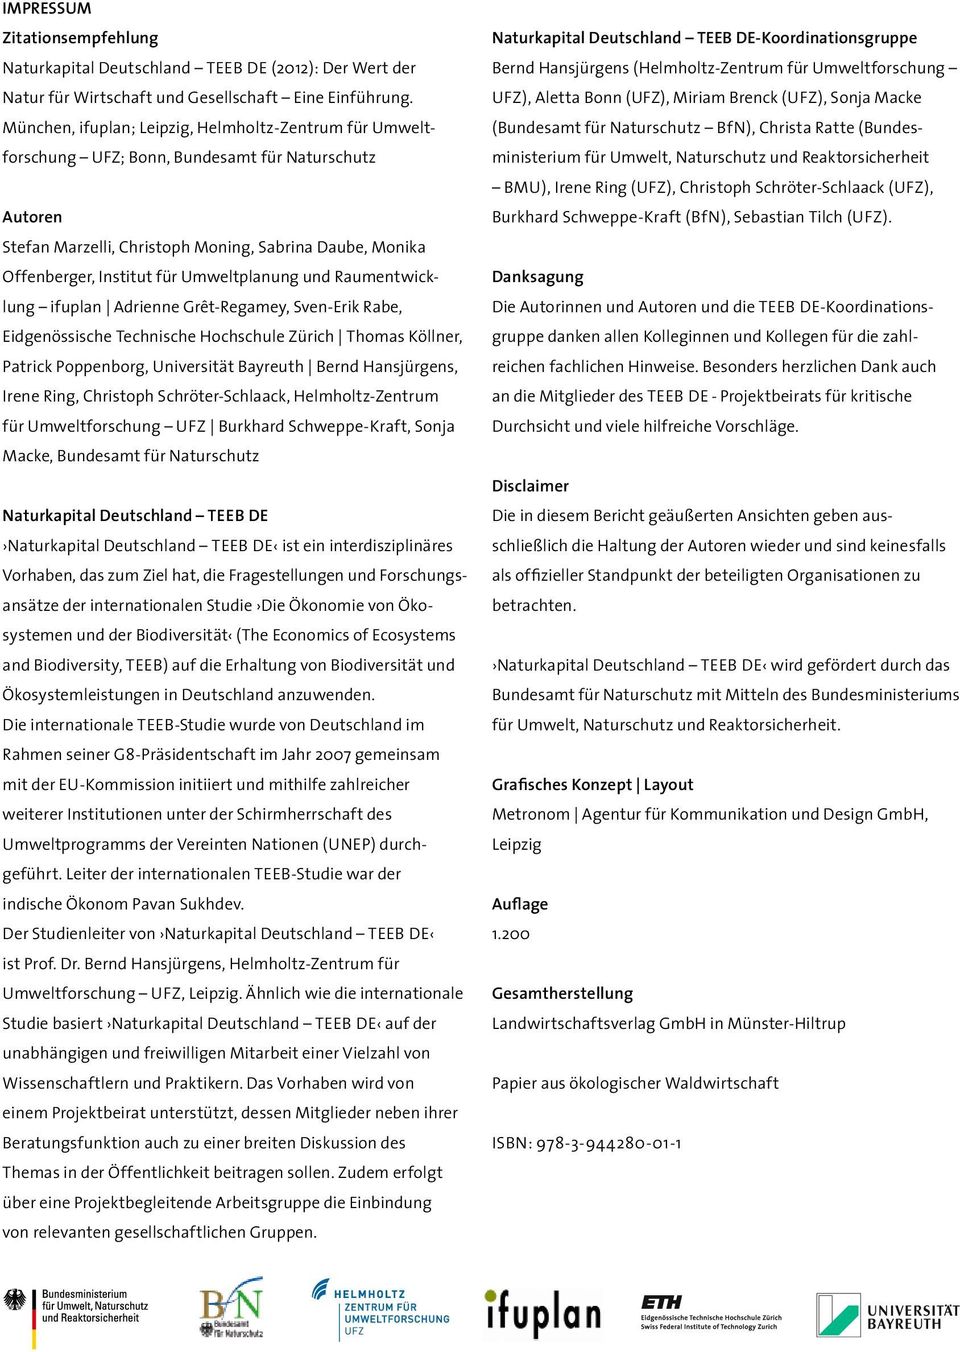 Umweltplanung und Raum entwick - lung ifuplan Adrienne Grêt-Regamey, Sven-Erik Rabe, Eidge nös sische Technische Hochschule Zürich Thomas Köllner, Patrick Poppenborg, Universität Bayreuth Bernd